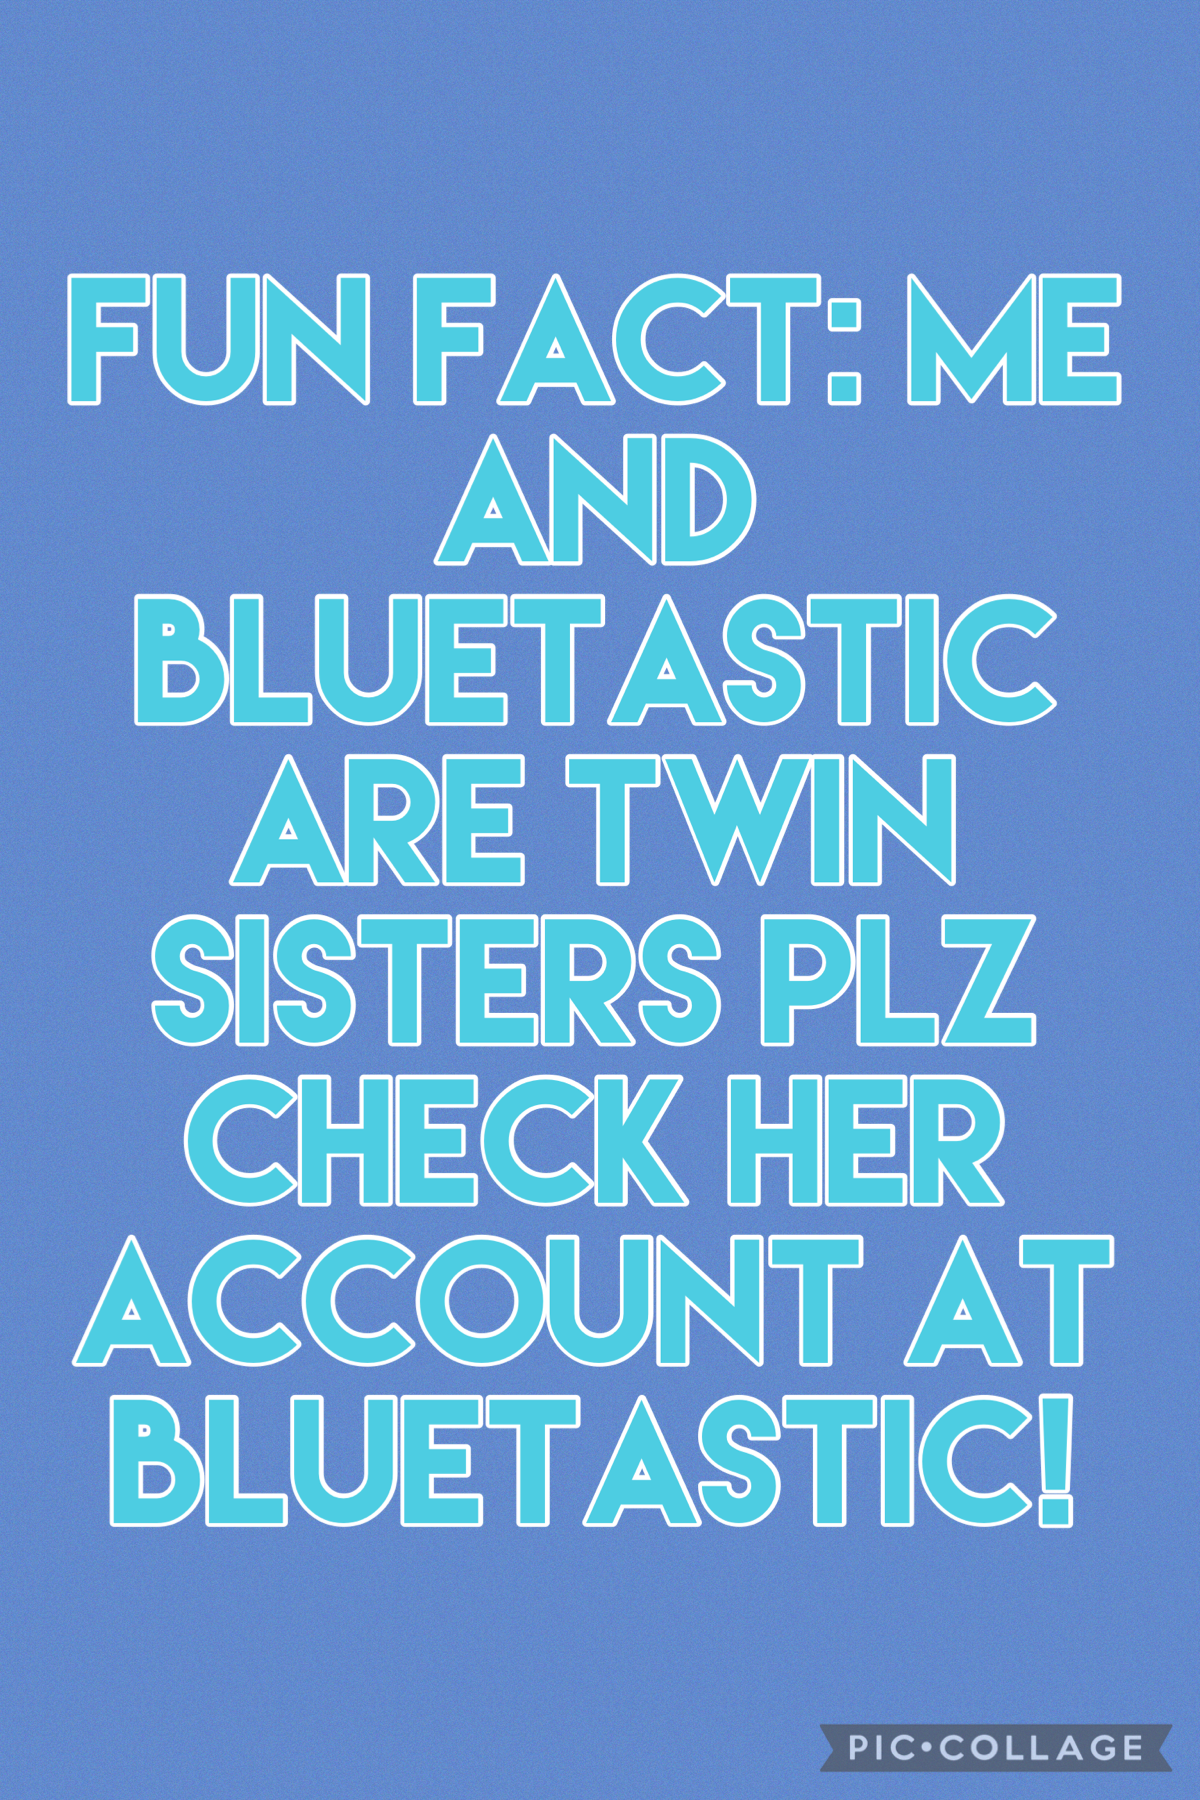 Check bluetastics account and follow her! Plz! 💙